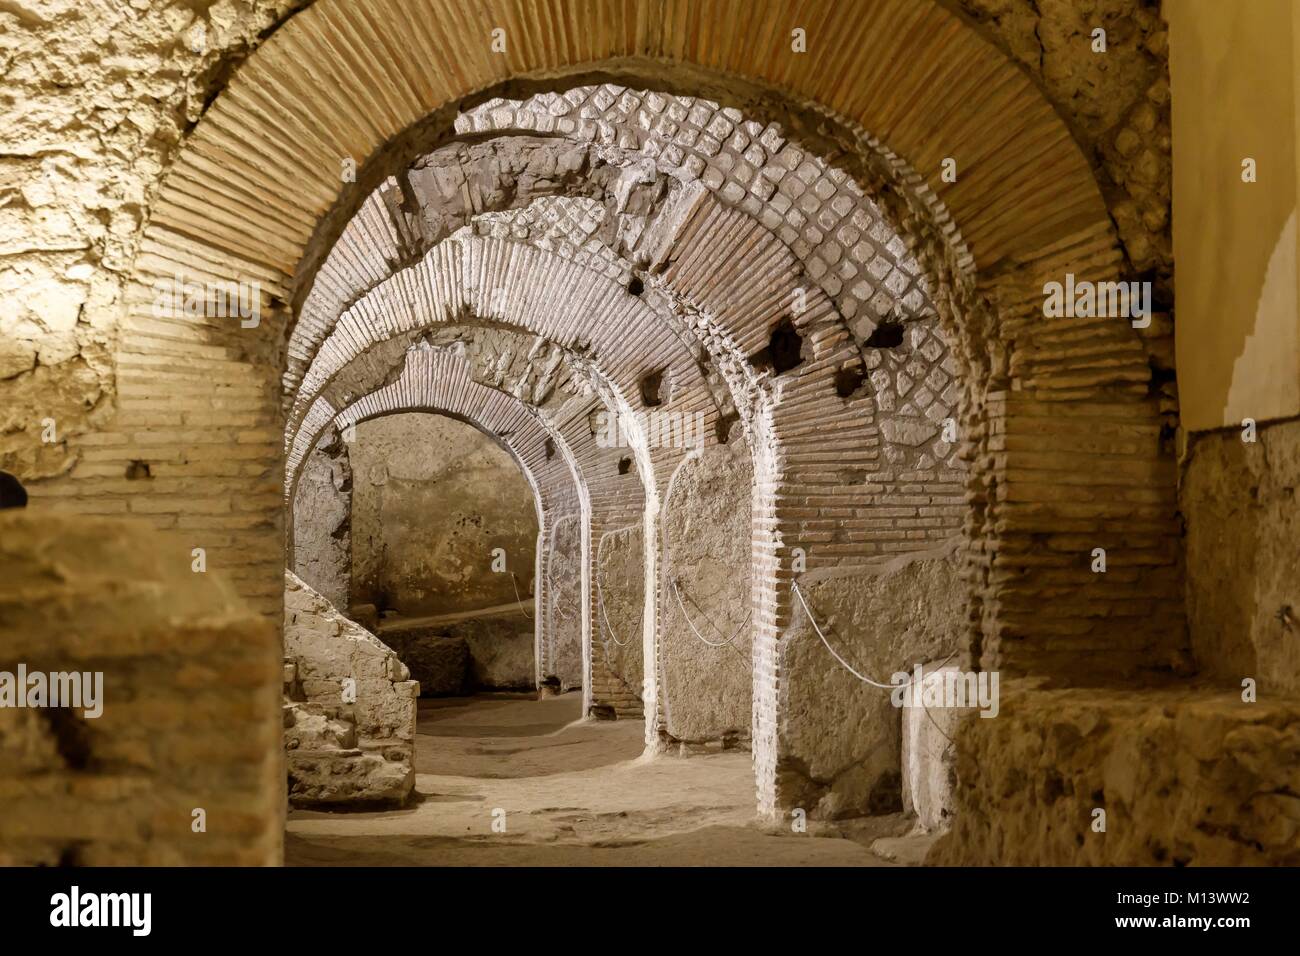 Italien, Kampanien, Neapel, die historische Altstadt als Weltkulturerbe von der UNESCO, San Lorenzo Maggiore Komplex, römischen Markt Ruinen aufgeführt Stockfoto